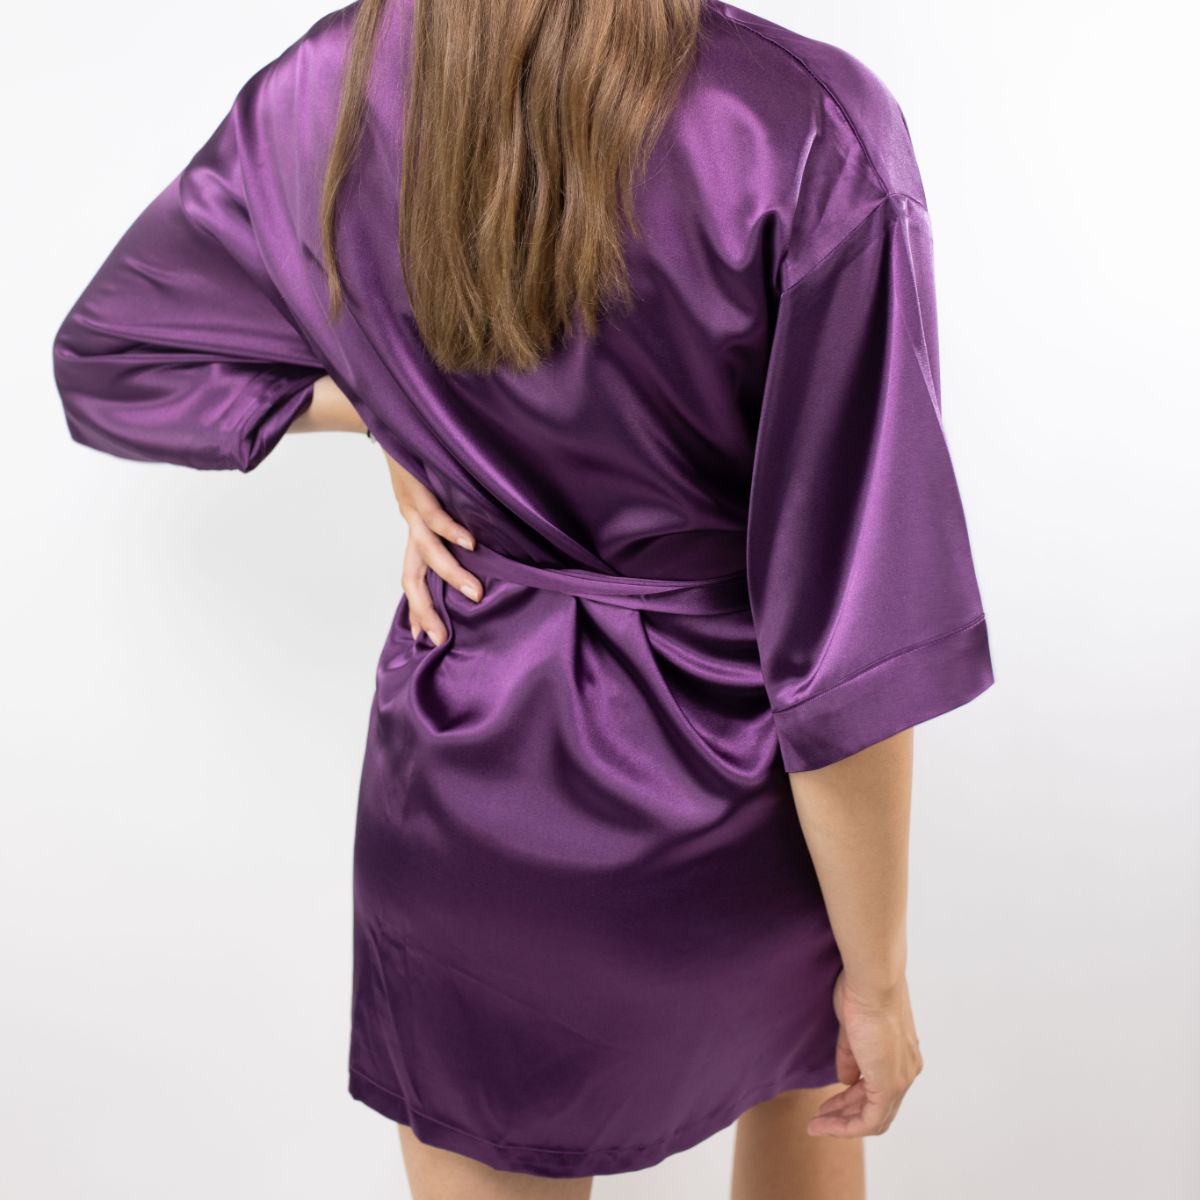 Kimono en satin joue avec le violet magique